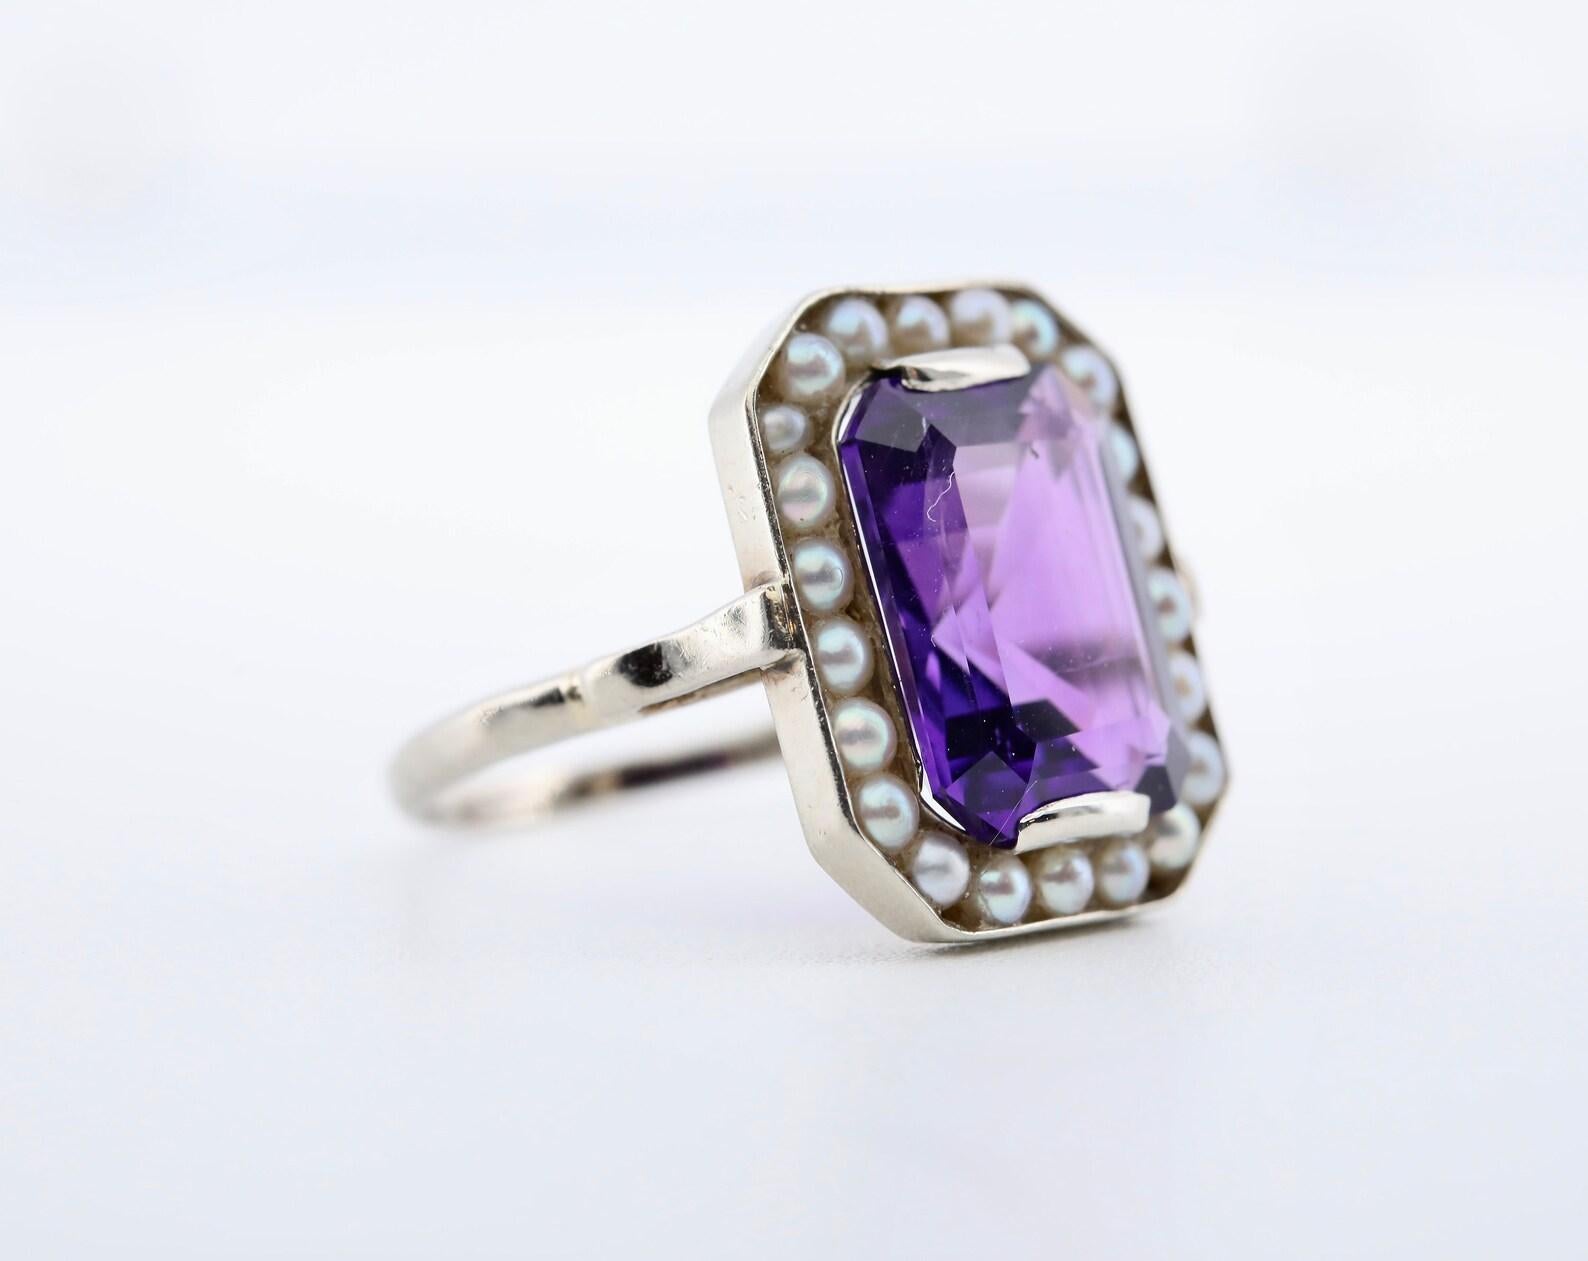 Ein handgefertigter Ring im Stil des Art Deco mit natürlichen Perlen und Amethysten im Halo-Stil.

In der Mitte befindet sich ein violetter Amethyst mit den Maßen 12 x 9 mm und einem Gewicht von etwa 5 Karat.

Umgeben von einem Heiligenschein aus